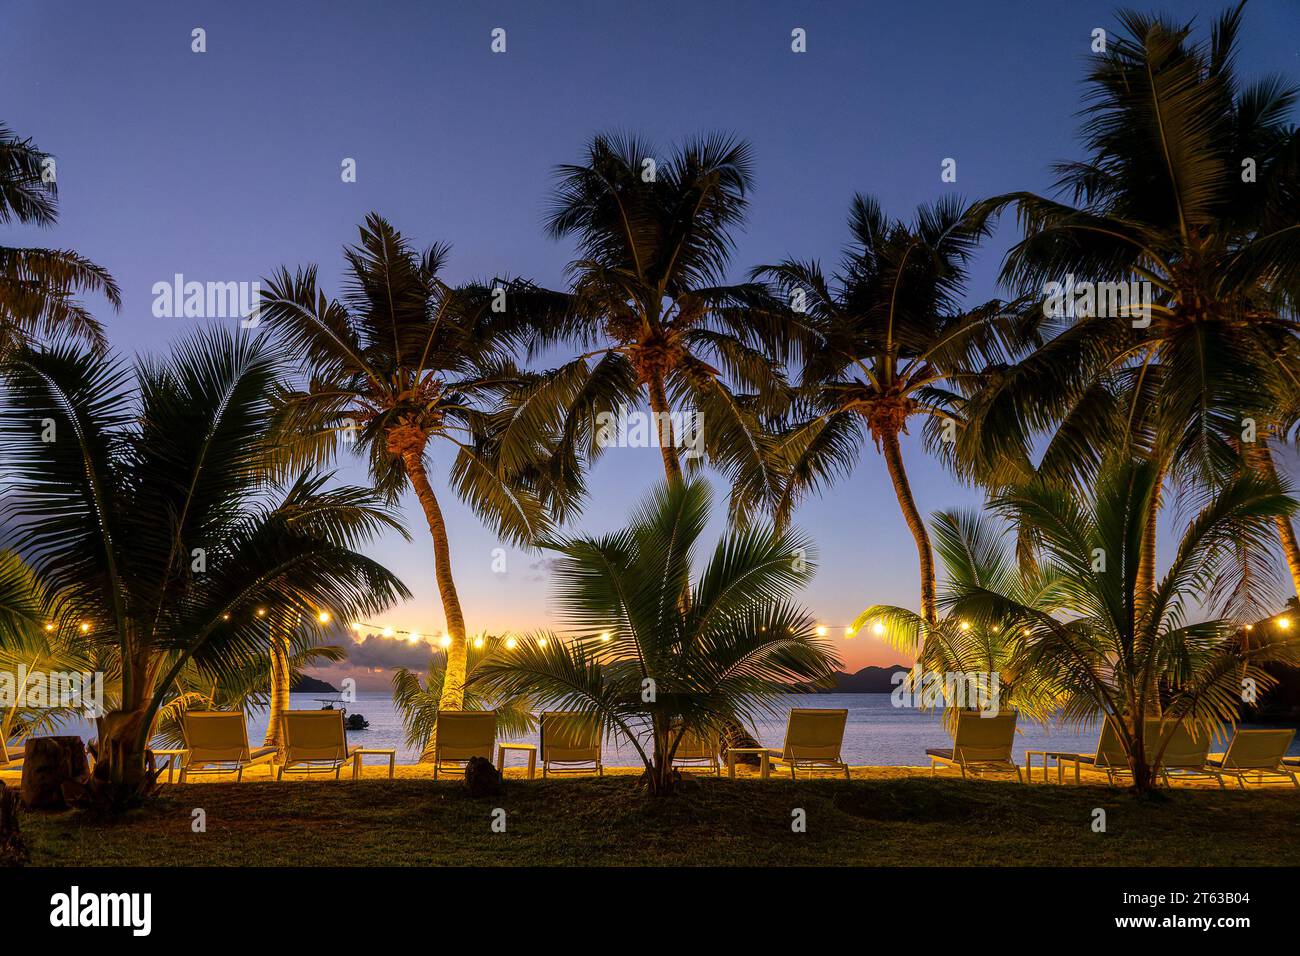 Palmiers illuminés et chaises longues la nuit sur l'île de Praslin, Seychelles Banque D'Images